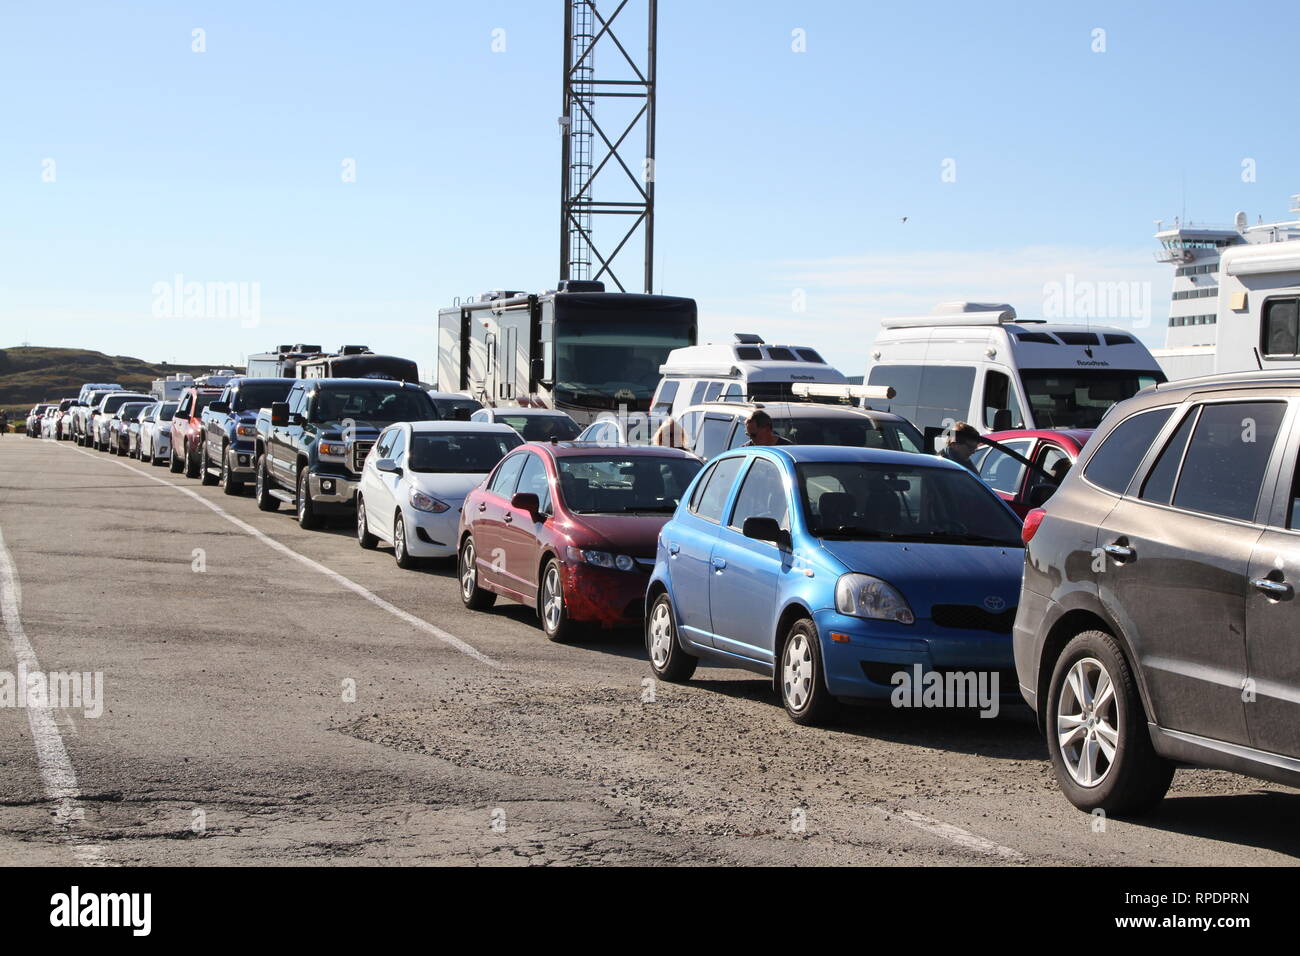 Les voitures et les camions alignés pour aller sur un ferry Banque D'Images